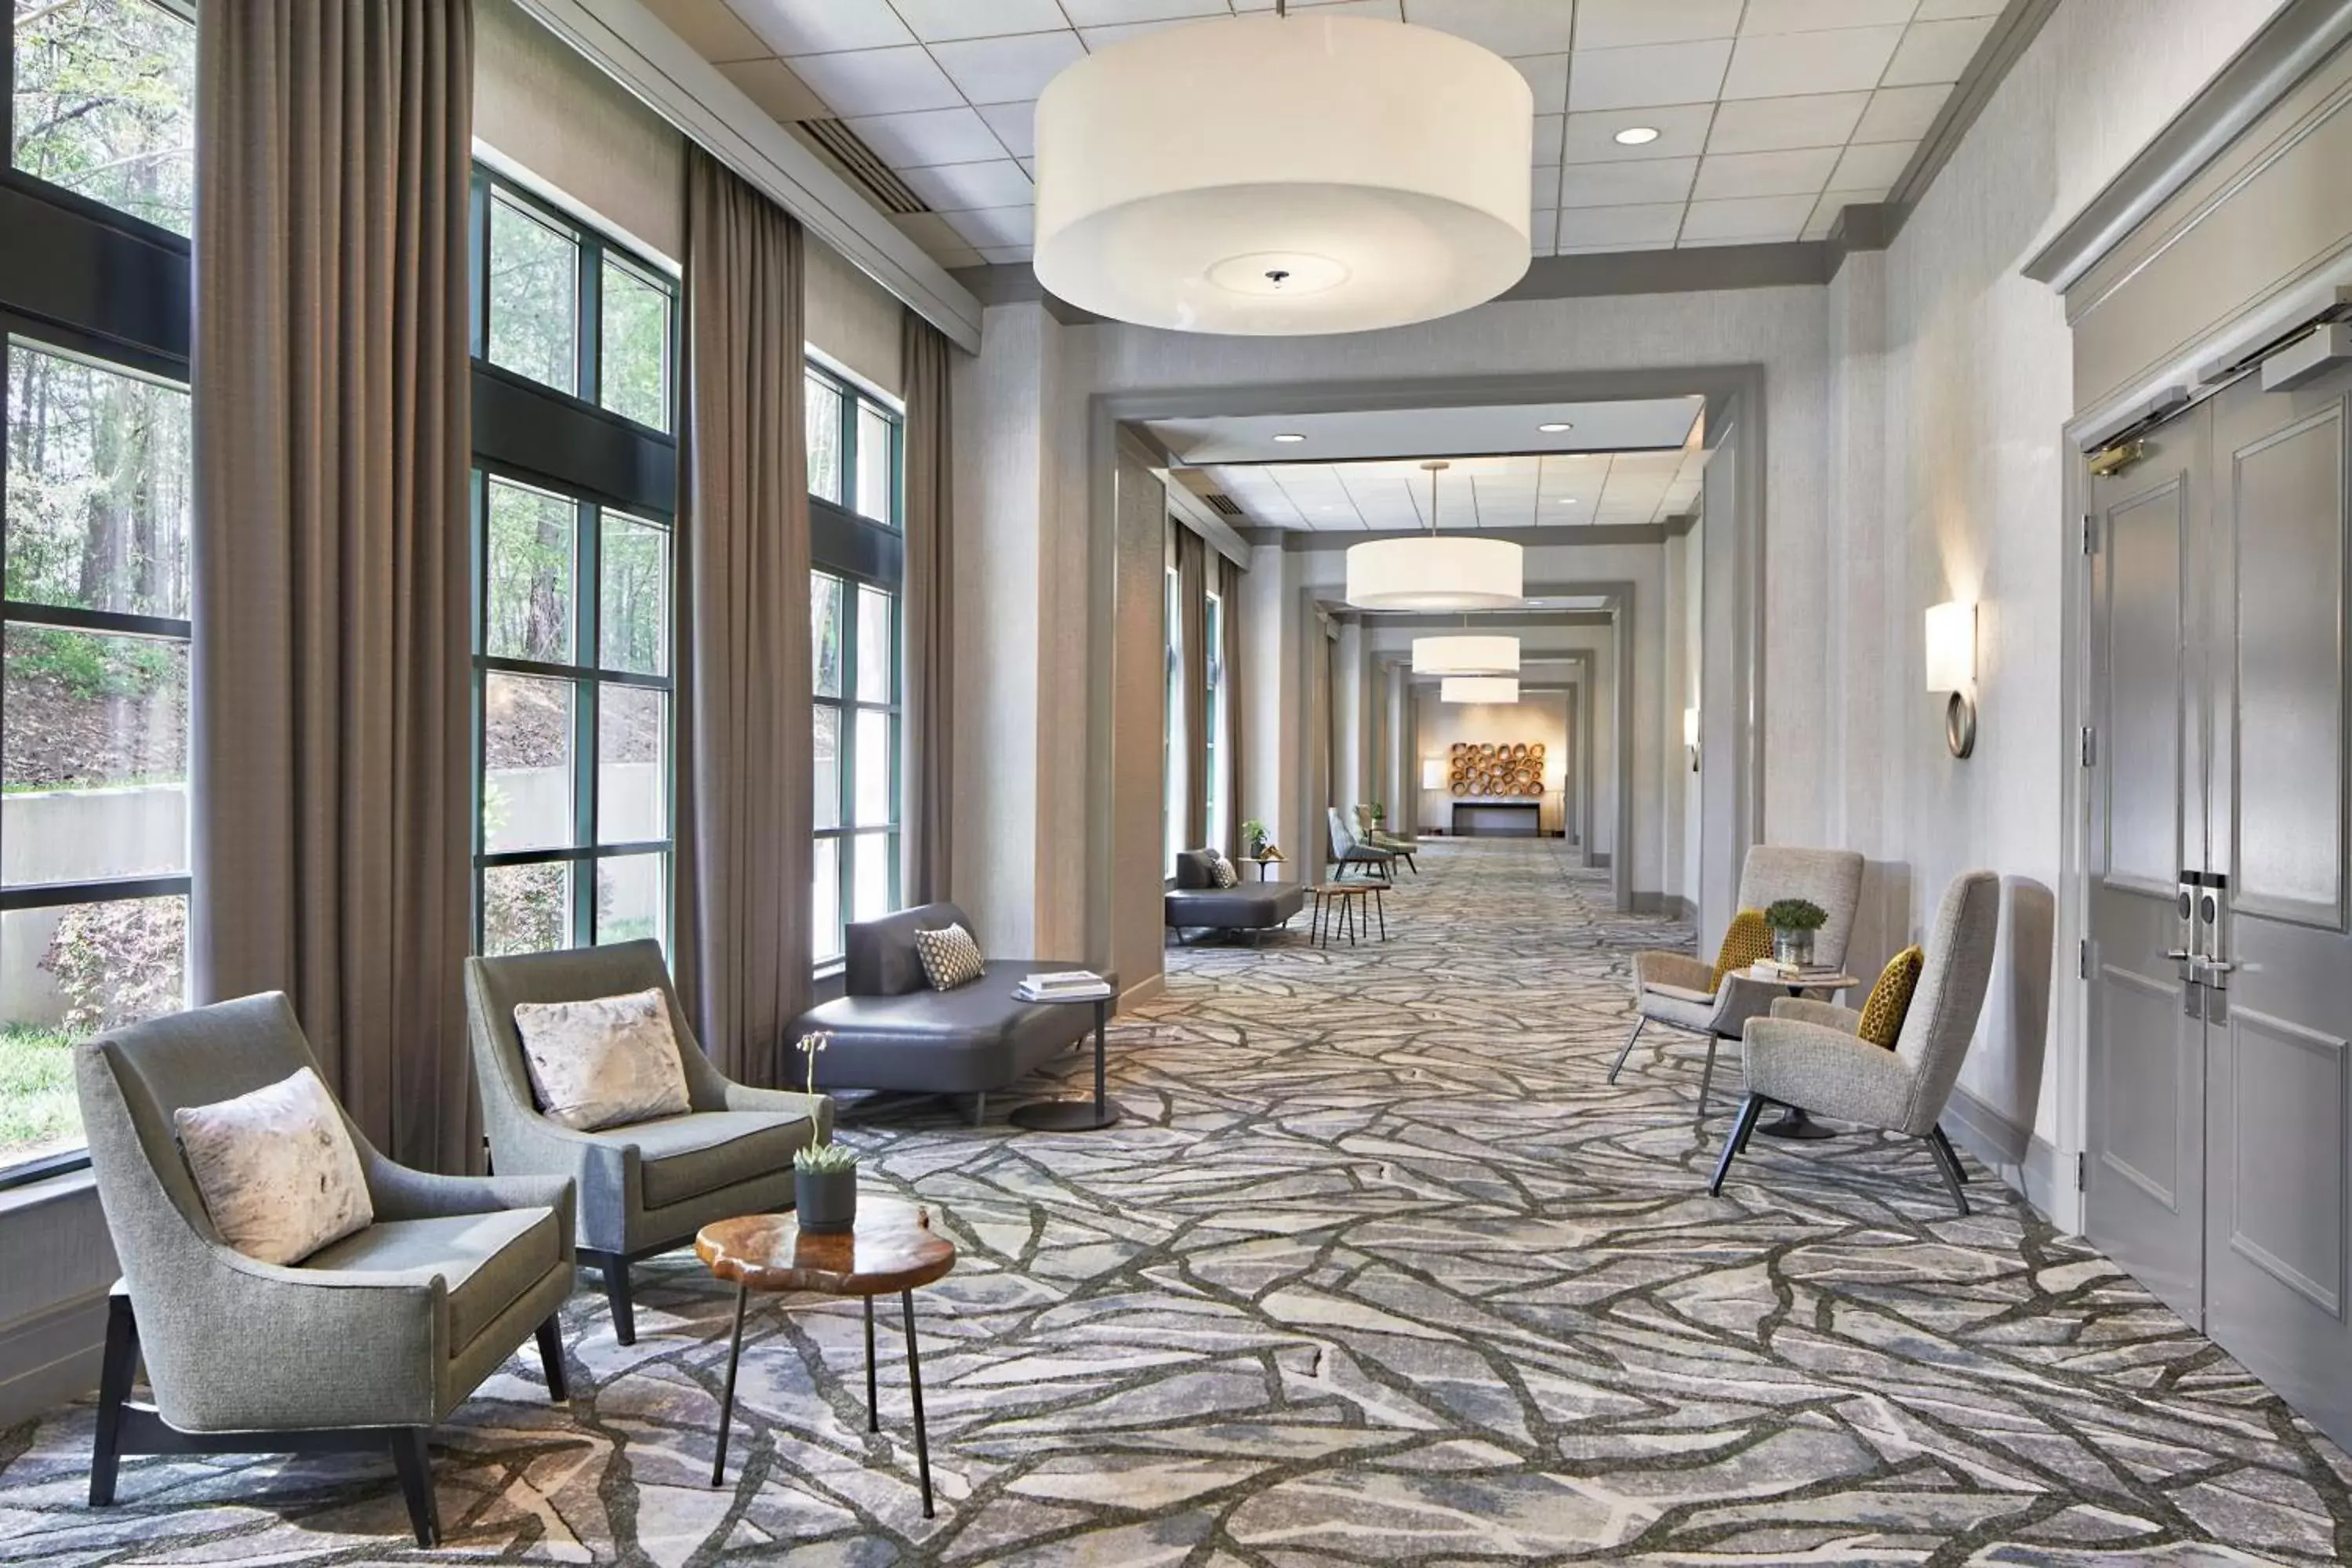 Meeting/conference room, Lobby/Reception in Atlanta Marriott Alpharetta